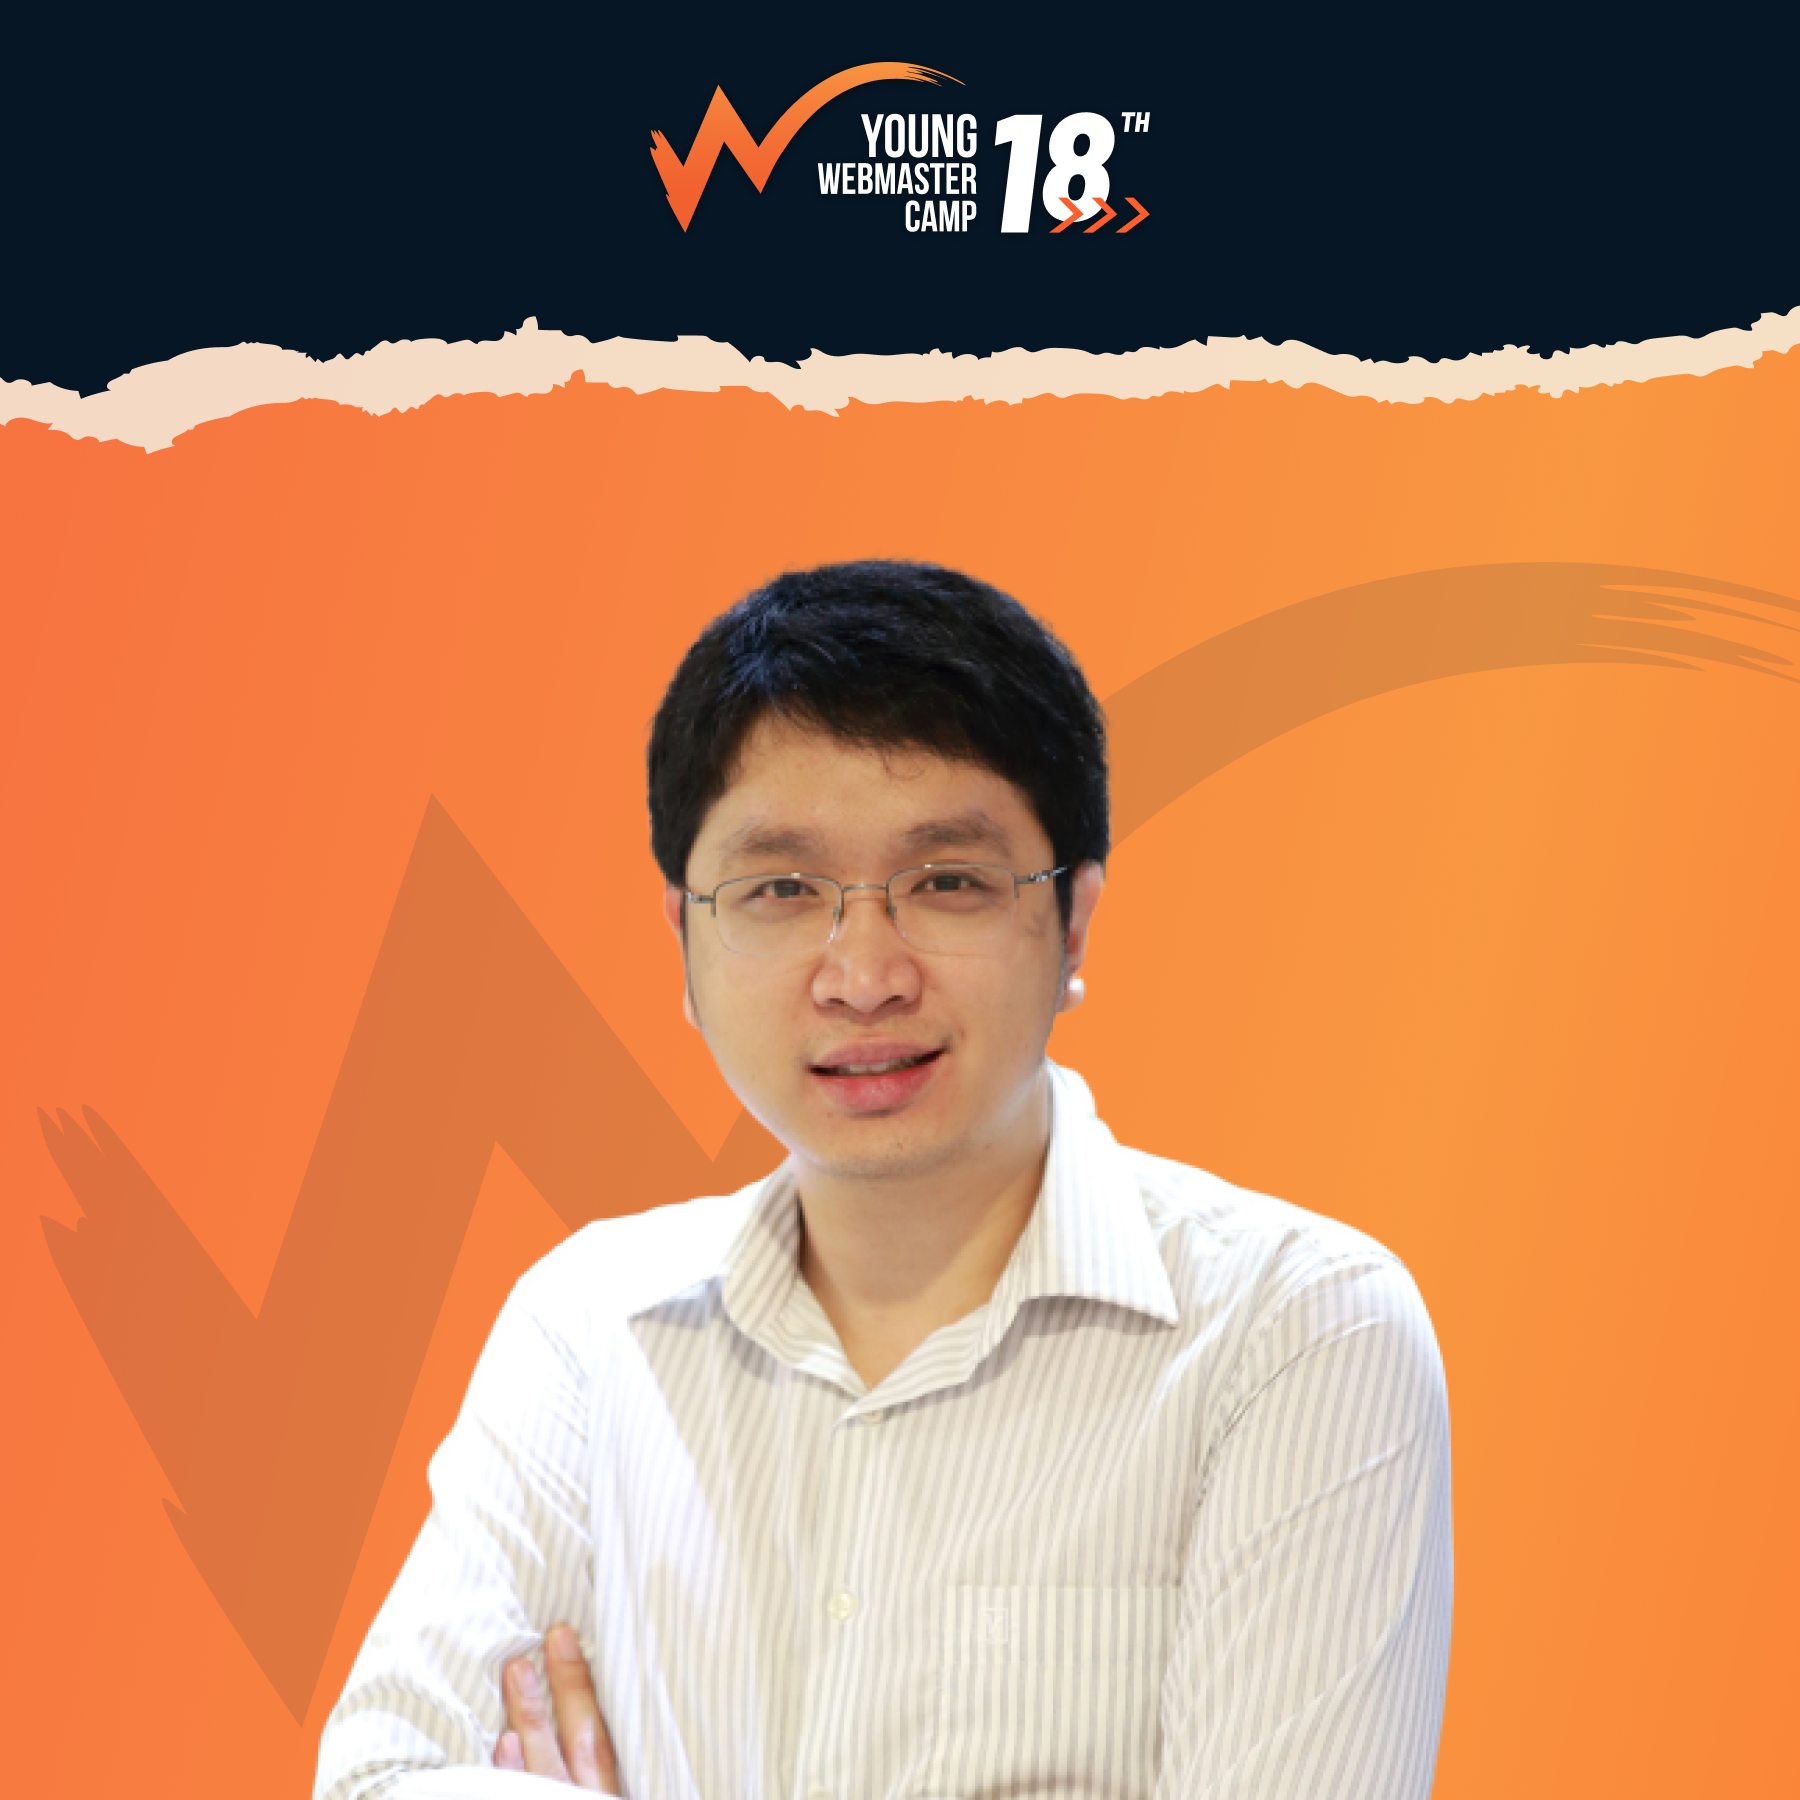 สมาคมผู้ดูแลเว็บไทย ปรับตัวรับโควิด จัดค่ายใหญ่ด้านดิจิทัล "Young Webmaster Camp ปีที่ 18" ออนไลน์ครั้งแรก